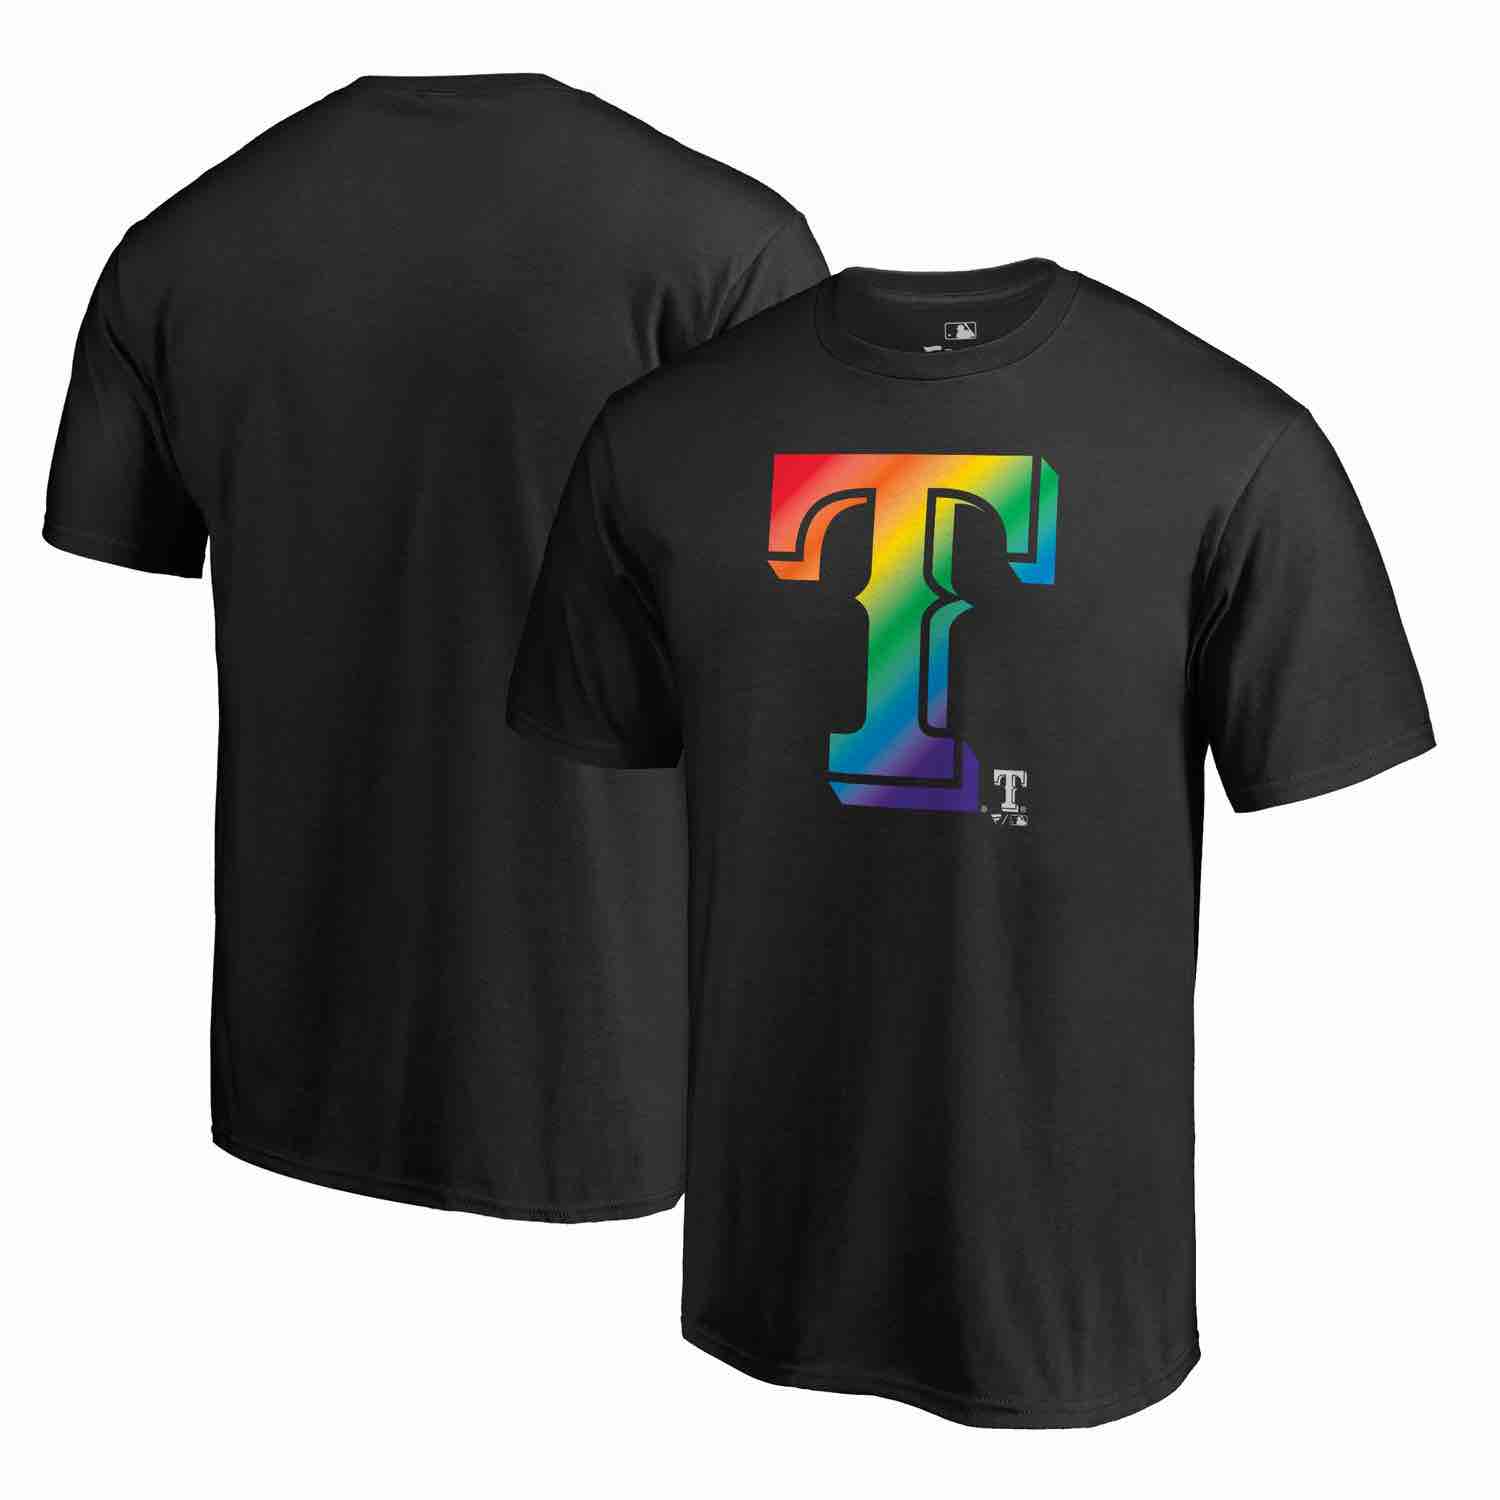 Mens Texas Rangers Fanatics Branded Pride Black T-Shirt